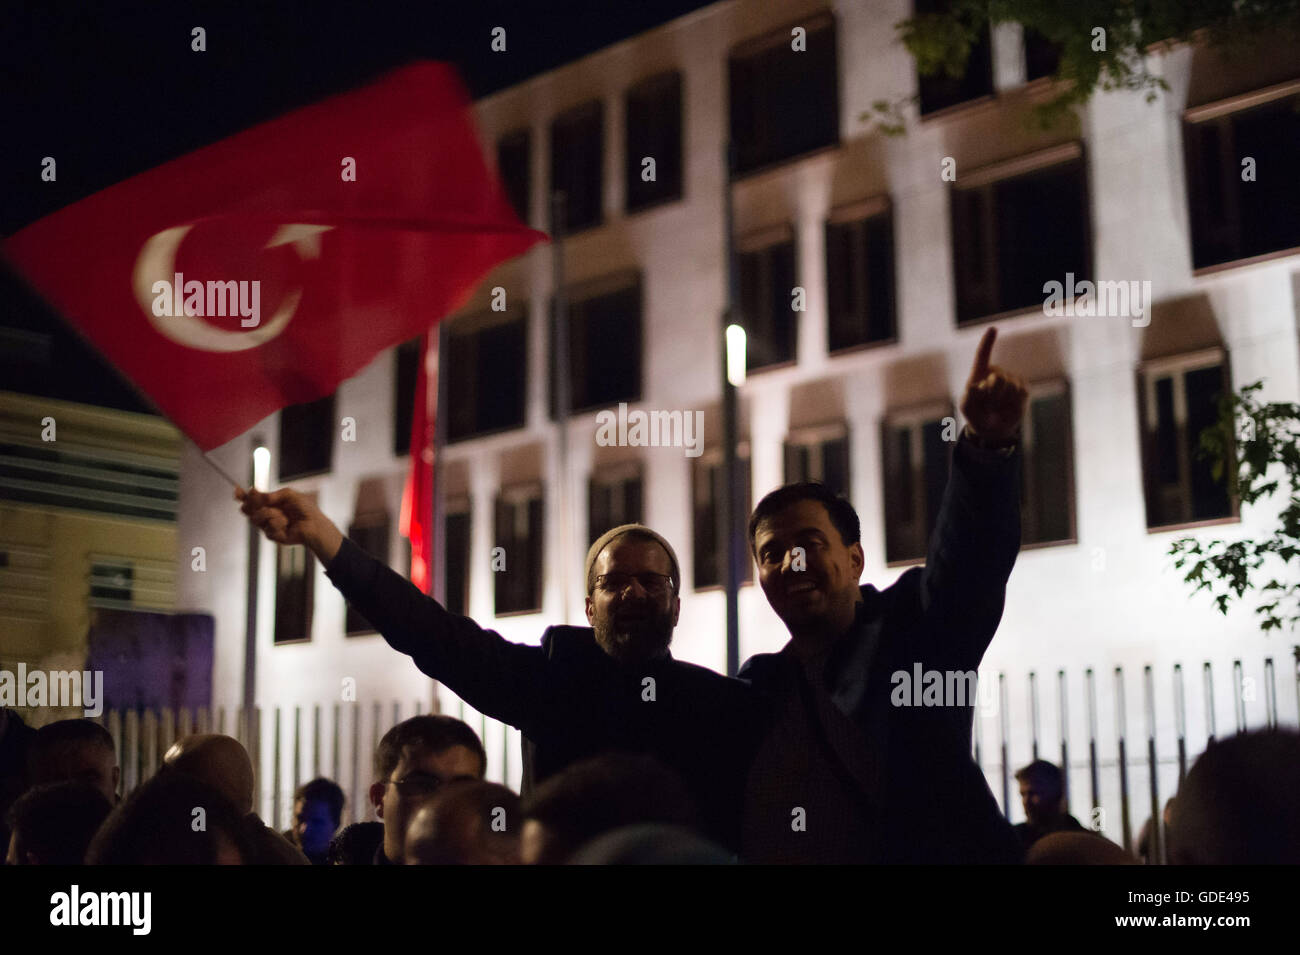 Berlino, Germania. 16 Luglio, 2016. Centinaia di persone con bandiere turche che protestavano contro il colpo di stato militare in Turchia stare in piedi davanti all'ambasciata turca a Berlino, Germania, 16 luglio 2016. Foto: Klaus-Dietmar Gabbert/dpa/Alamy Live News Foto Stock